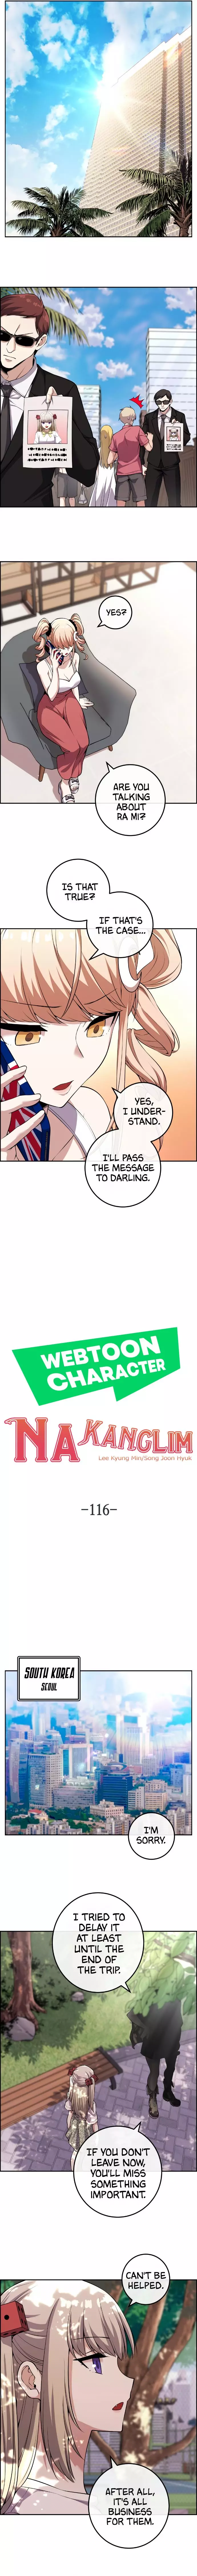 Webtoon Character Na Kang Lim - 116 page 3-659cdfb2